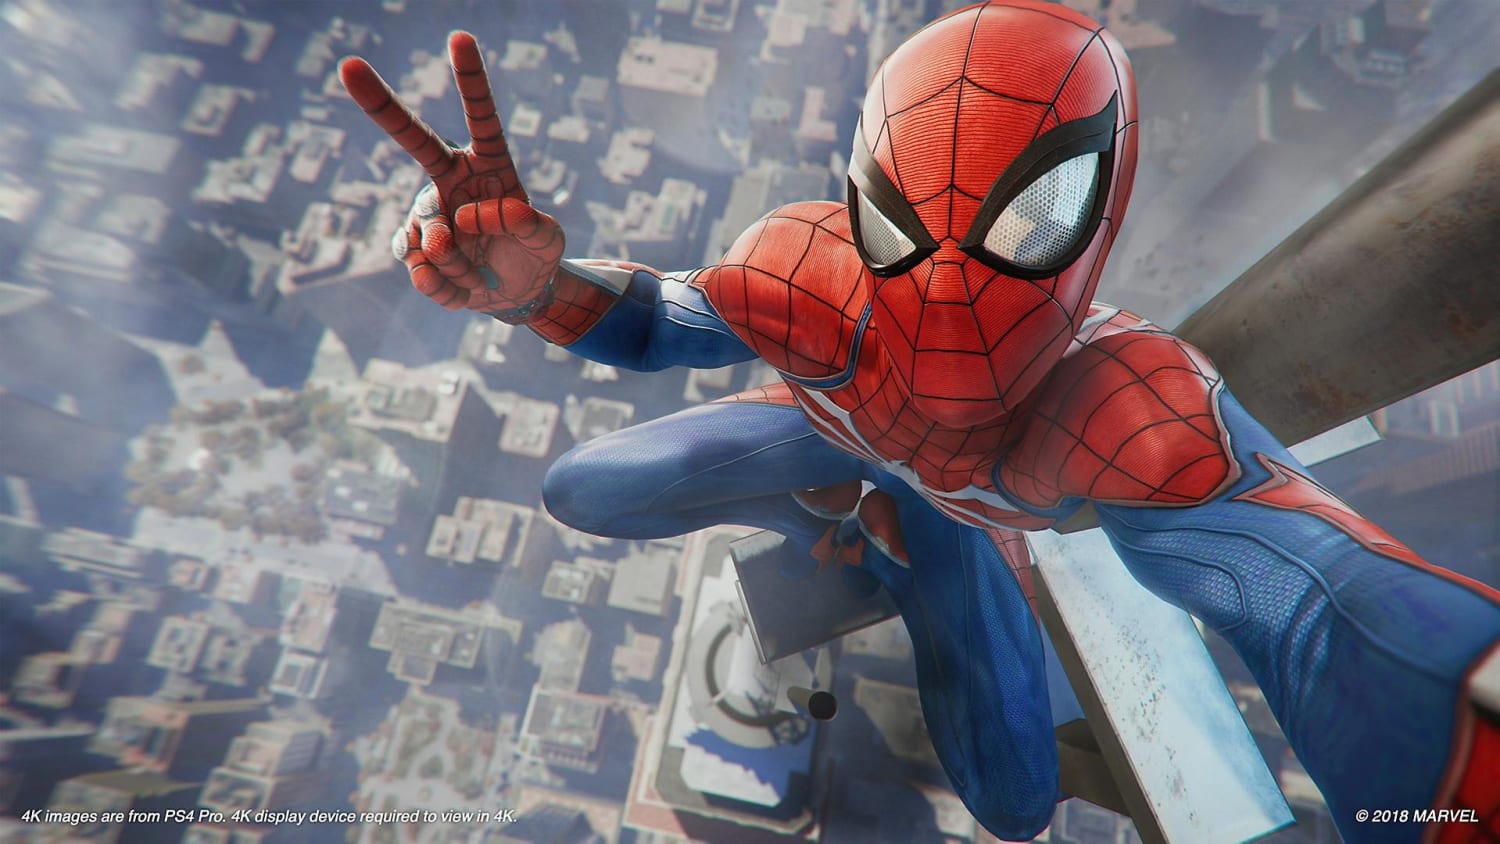 Spider-Man PS4 : Retour sur les jeux vidéos Spider-Man